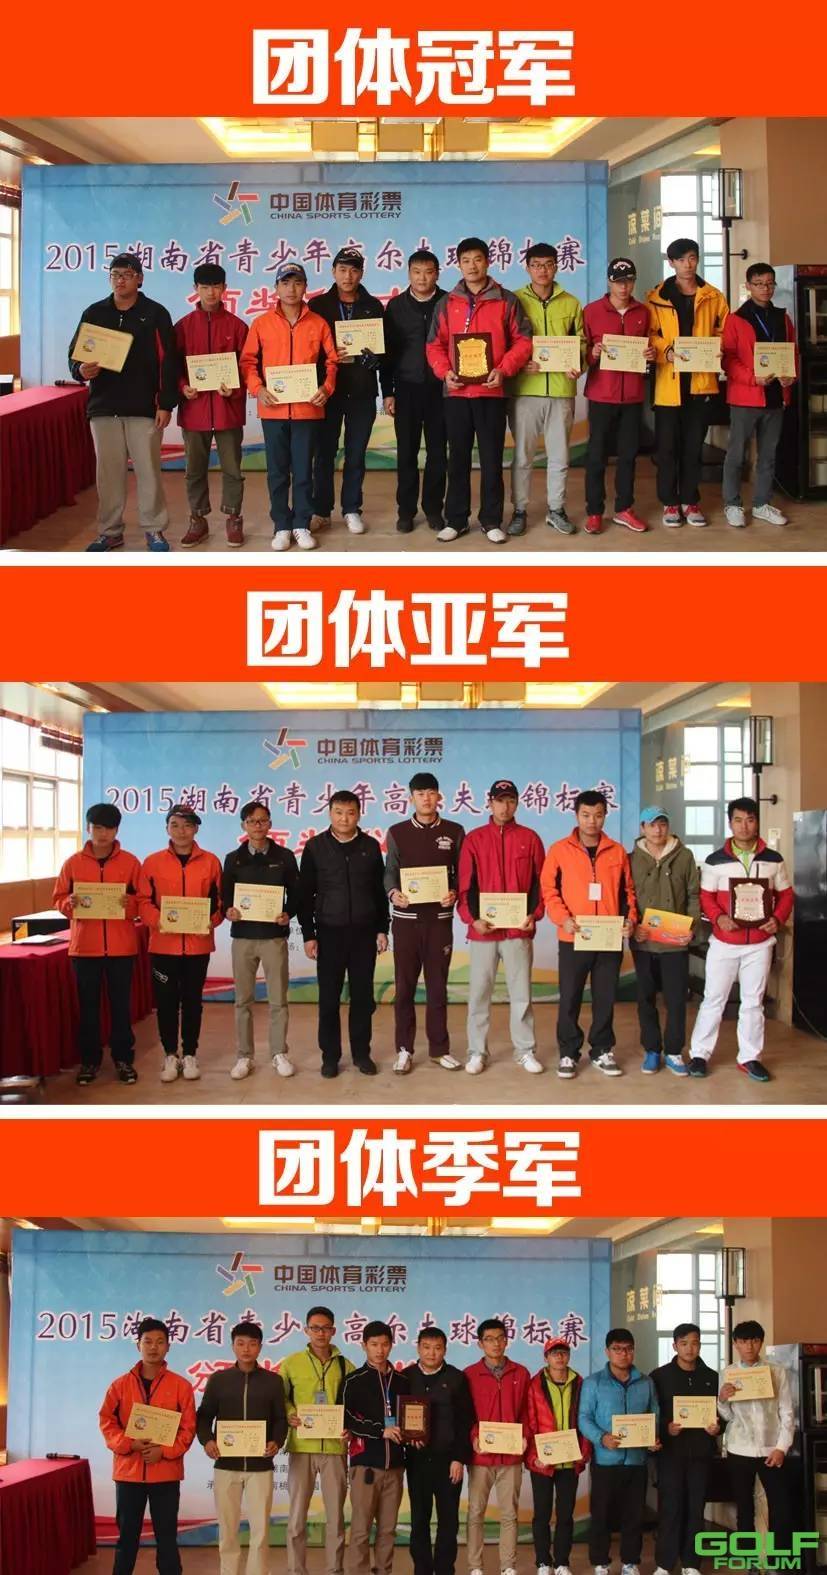 【唯一官方举办】2015湖南省青少年高尔夫球锦标赛圆满落幕 ...